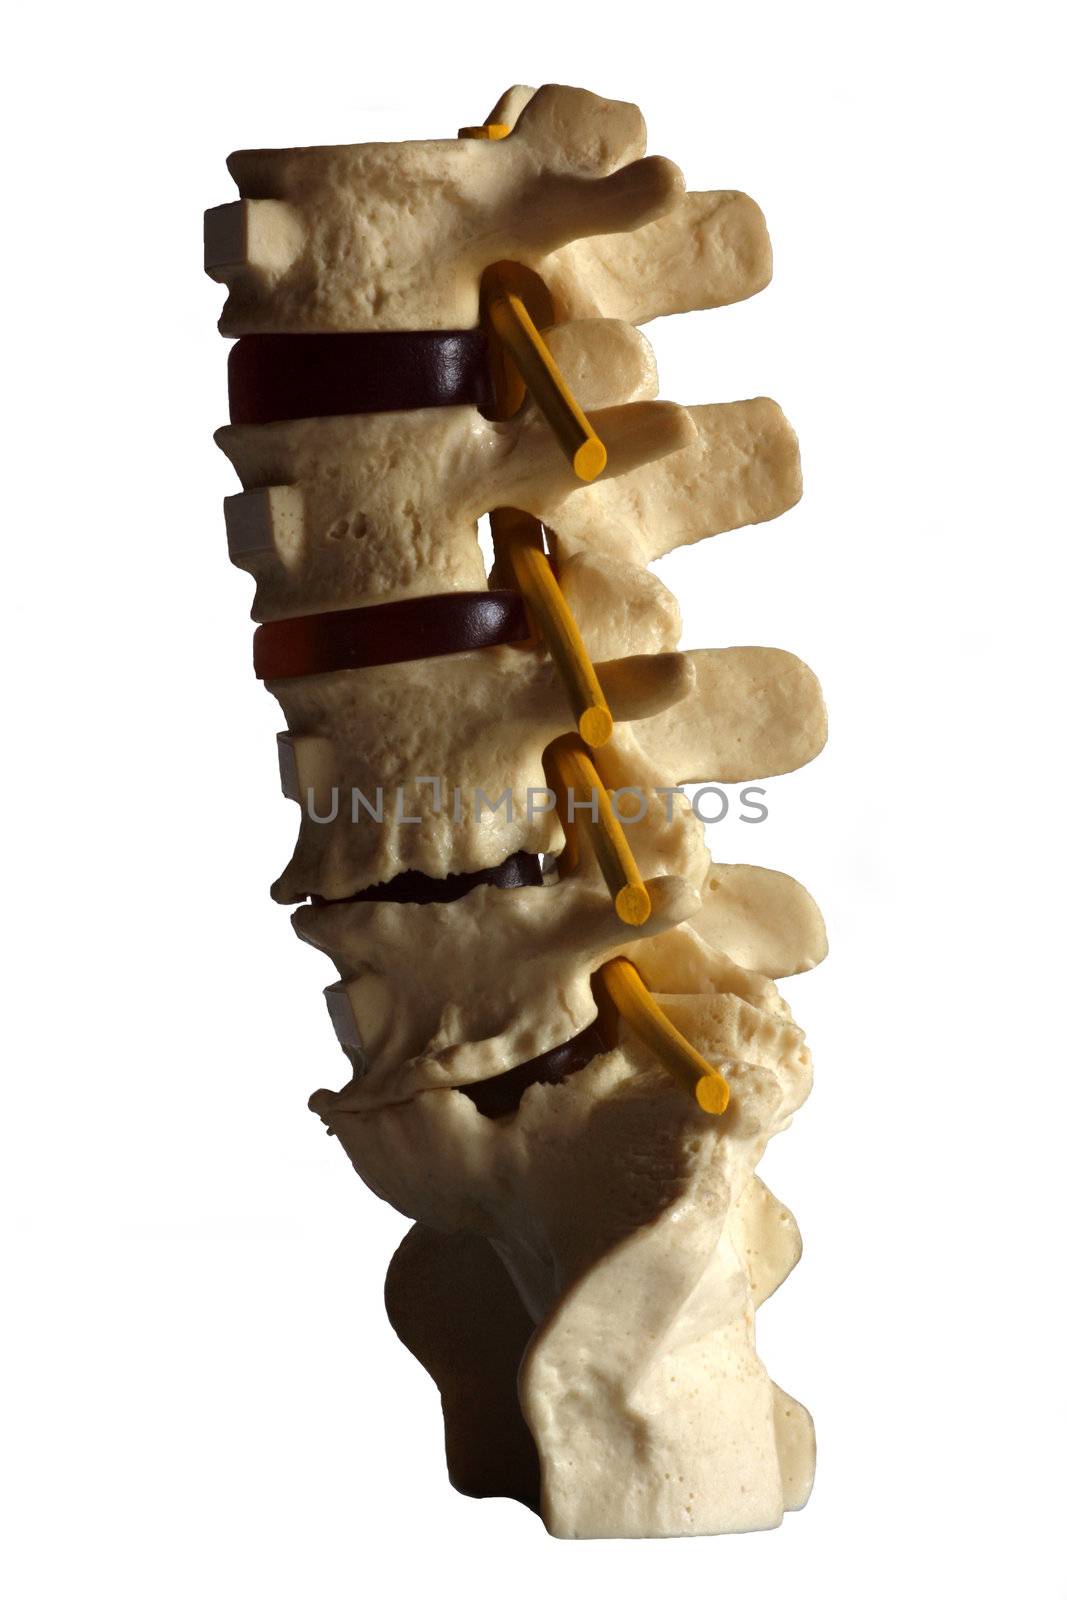 Spine by Imagecom